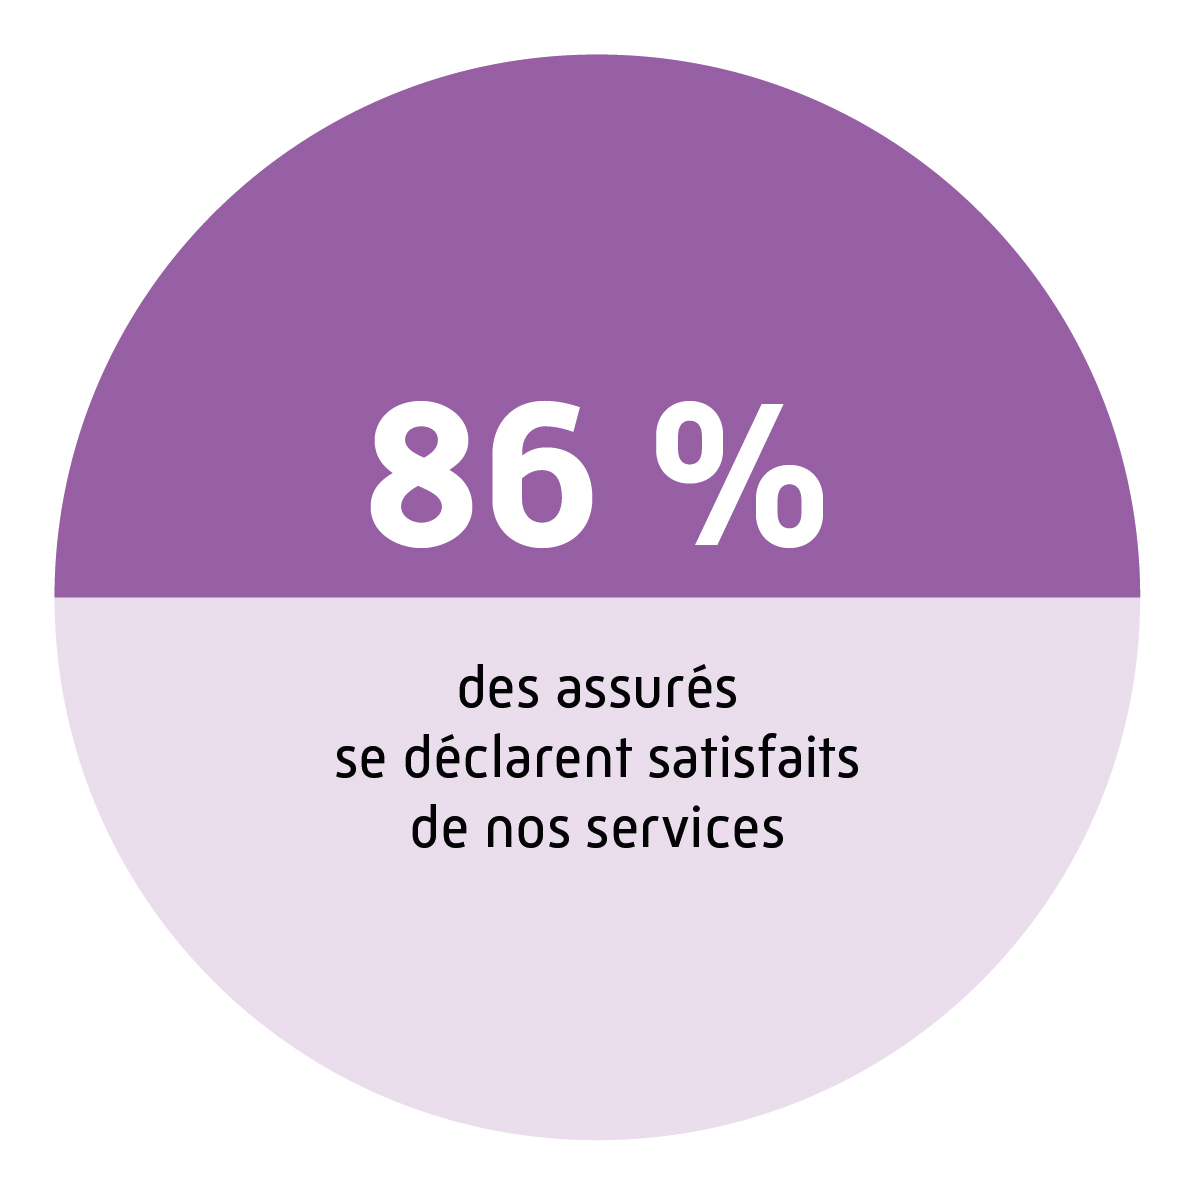 86 % des assurés se déclarent satisfaits de nos services.